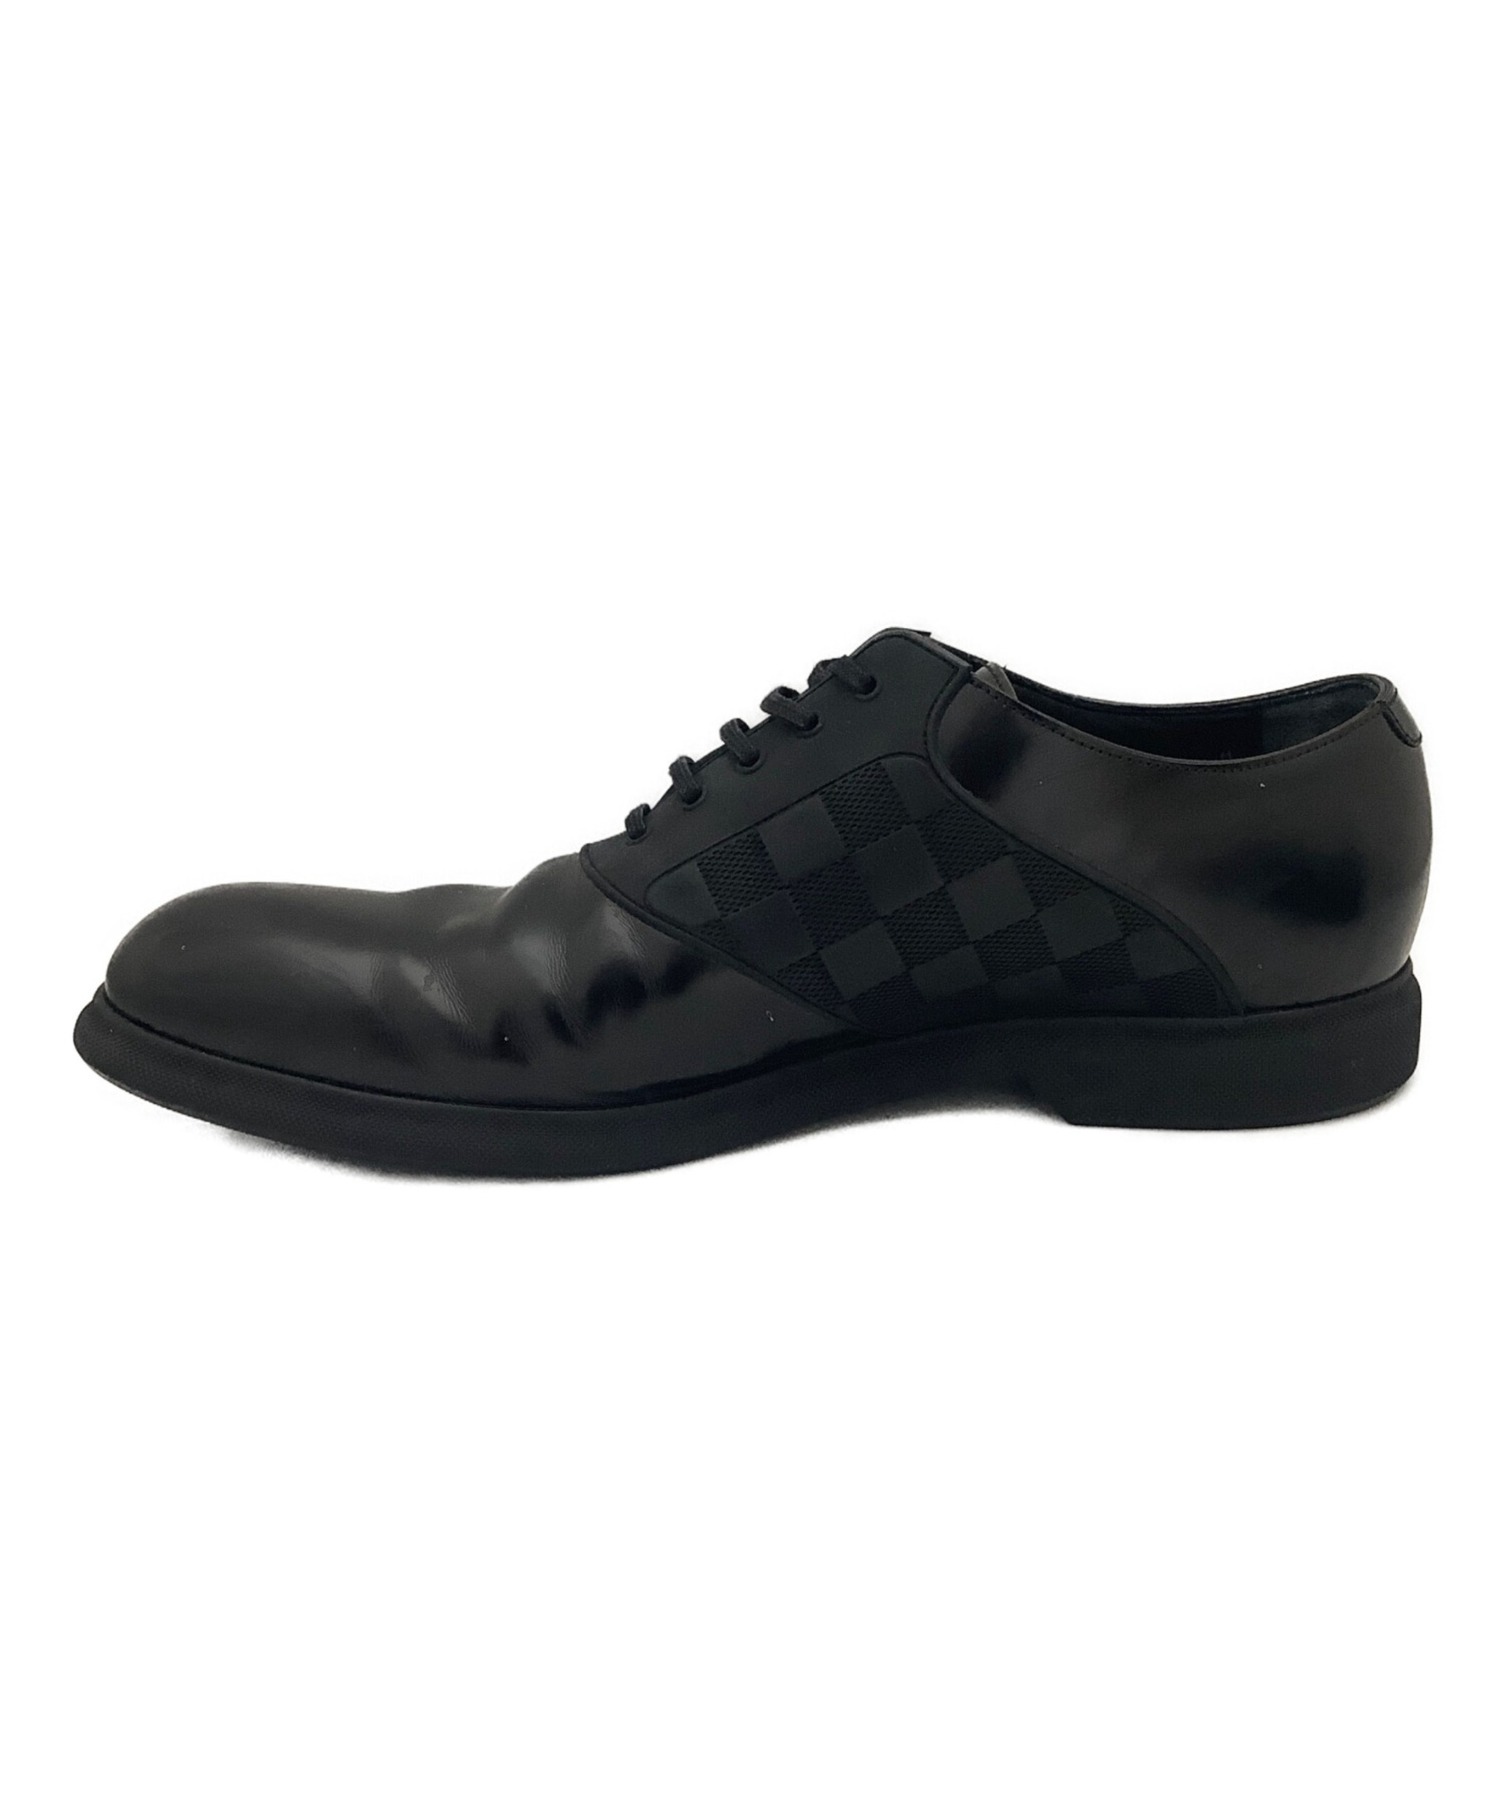 ルイヴィトン LOUIS VUITTON シューズ ダミエ パテントレザー ビジネスシューズ メンズ 靴 8.5(27cm相当) ブラック